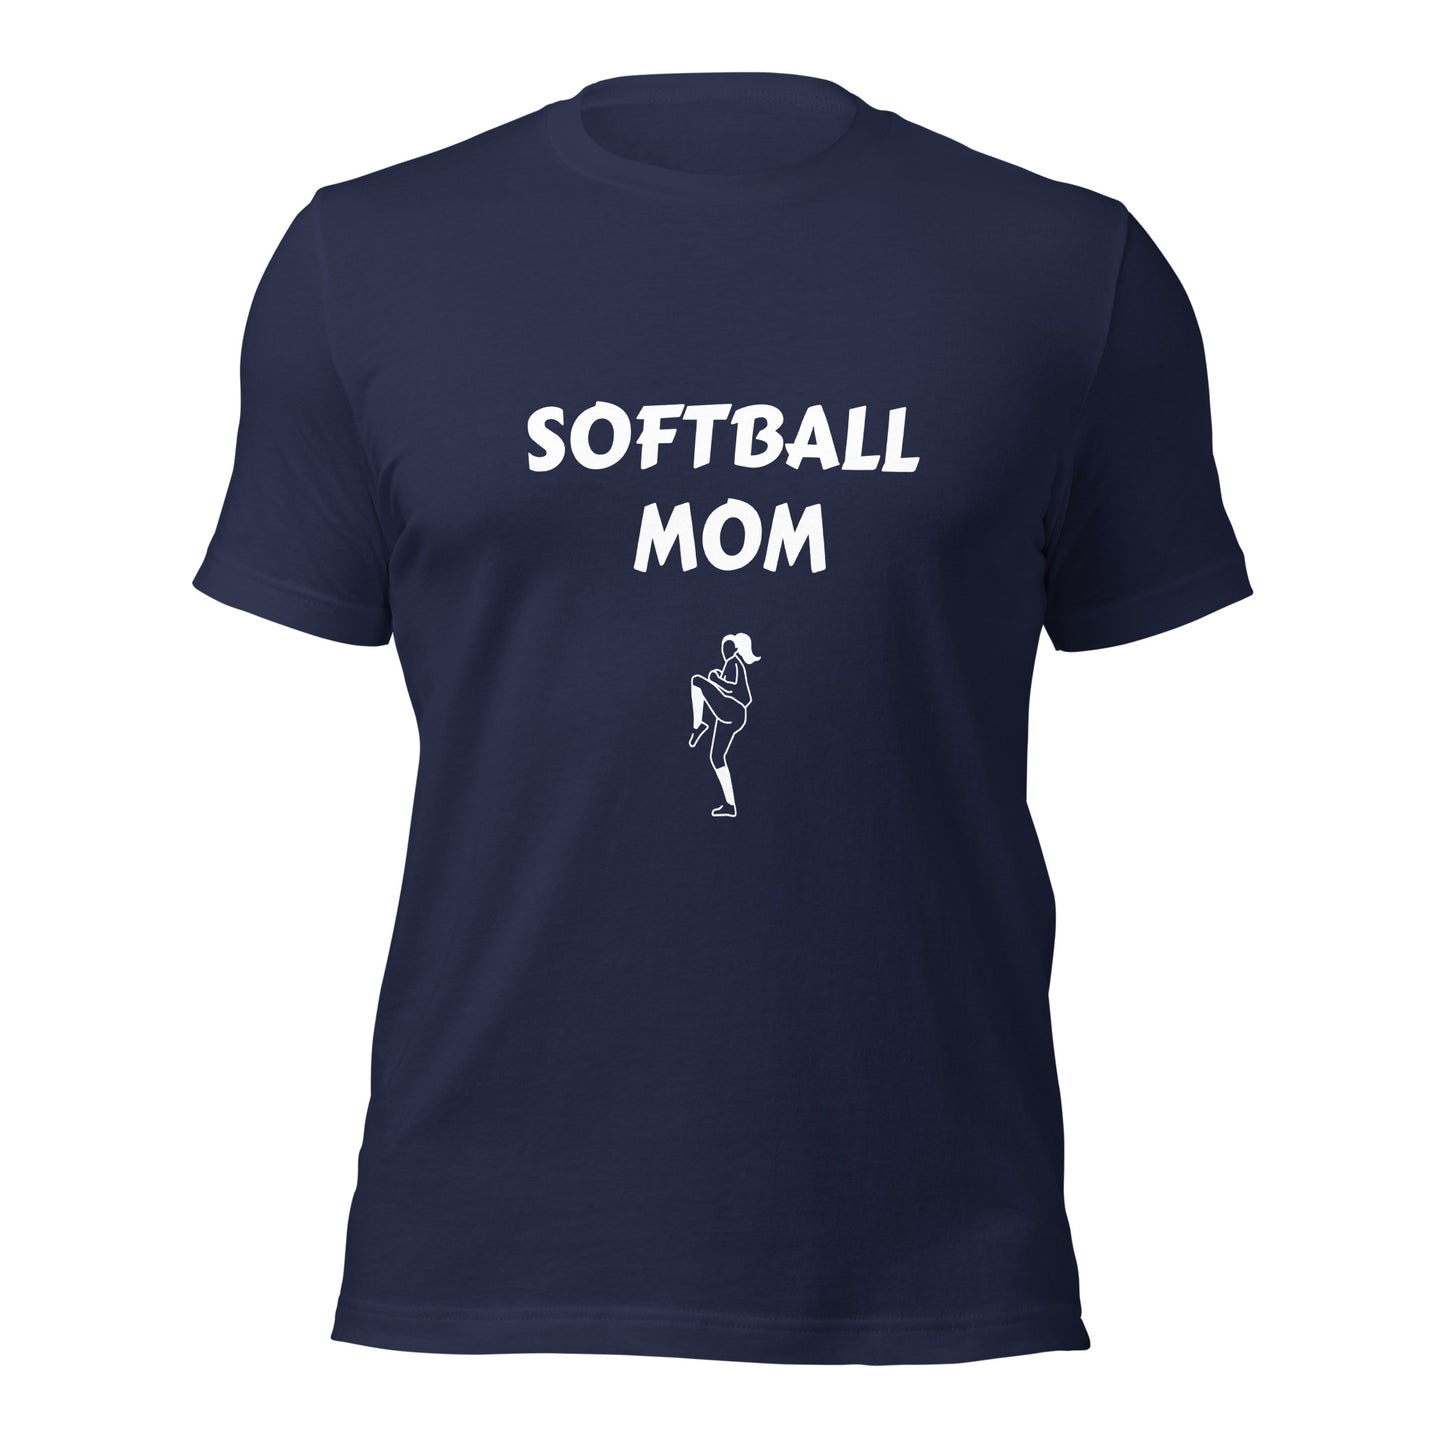 Softball Mom Printed Tshirt